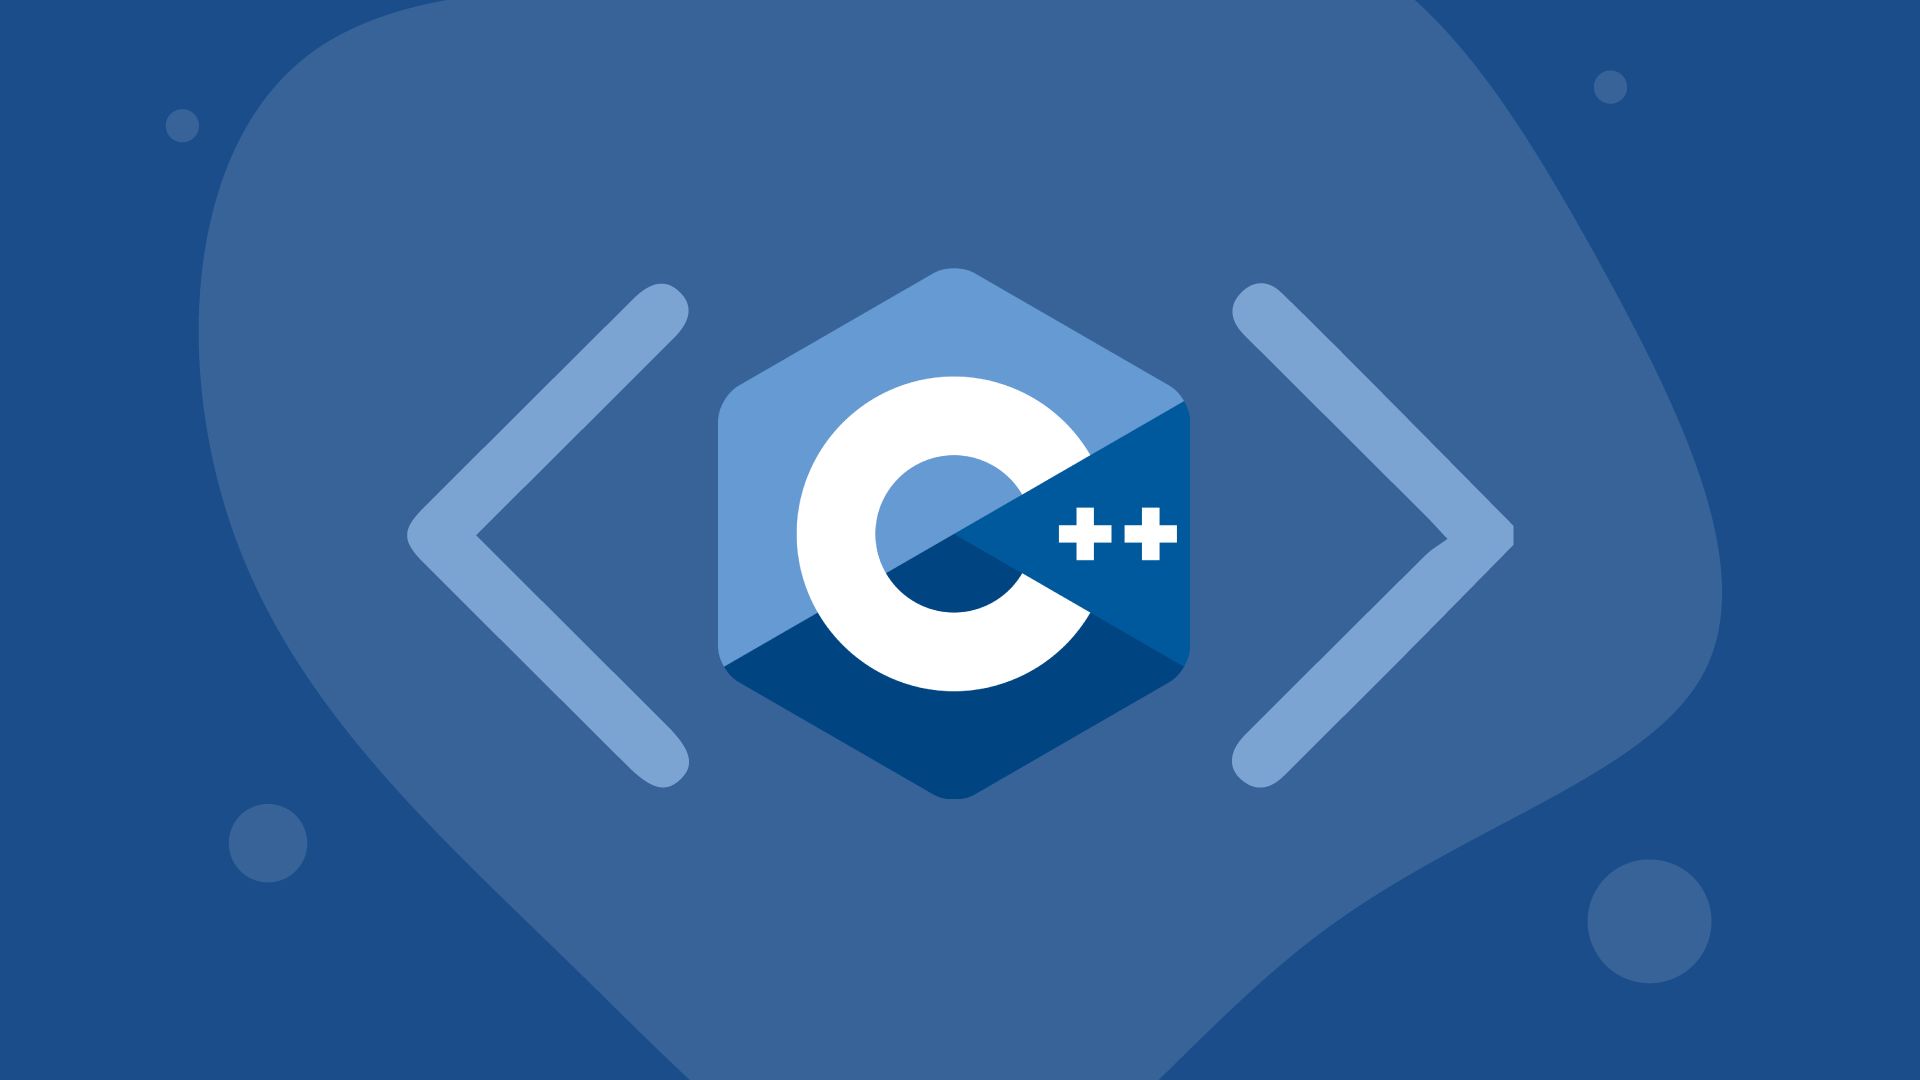 C++进行特定位数的四舍五入/向上取整/向下取整/截断